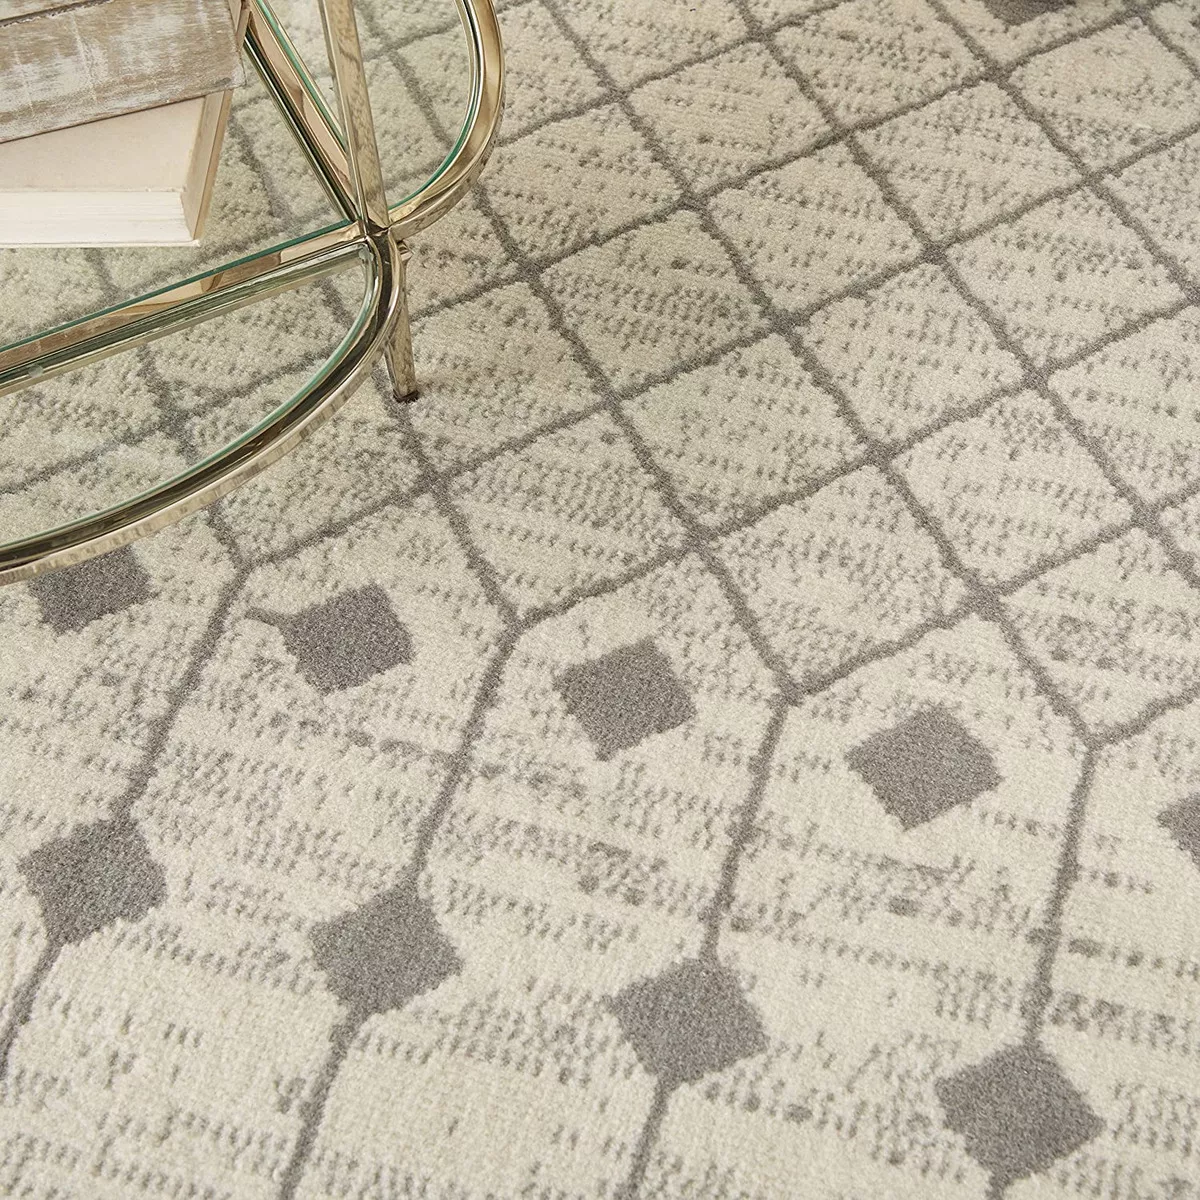 Primera imagen para búsqueda de alfombra gris